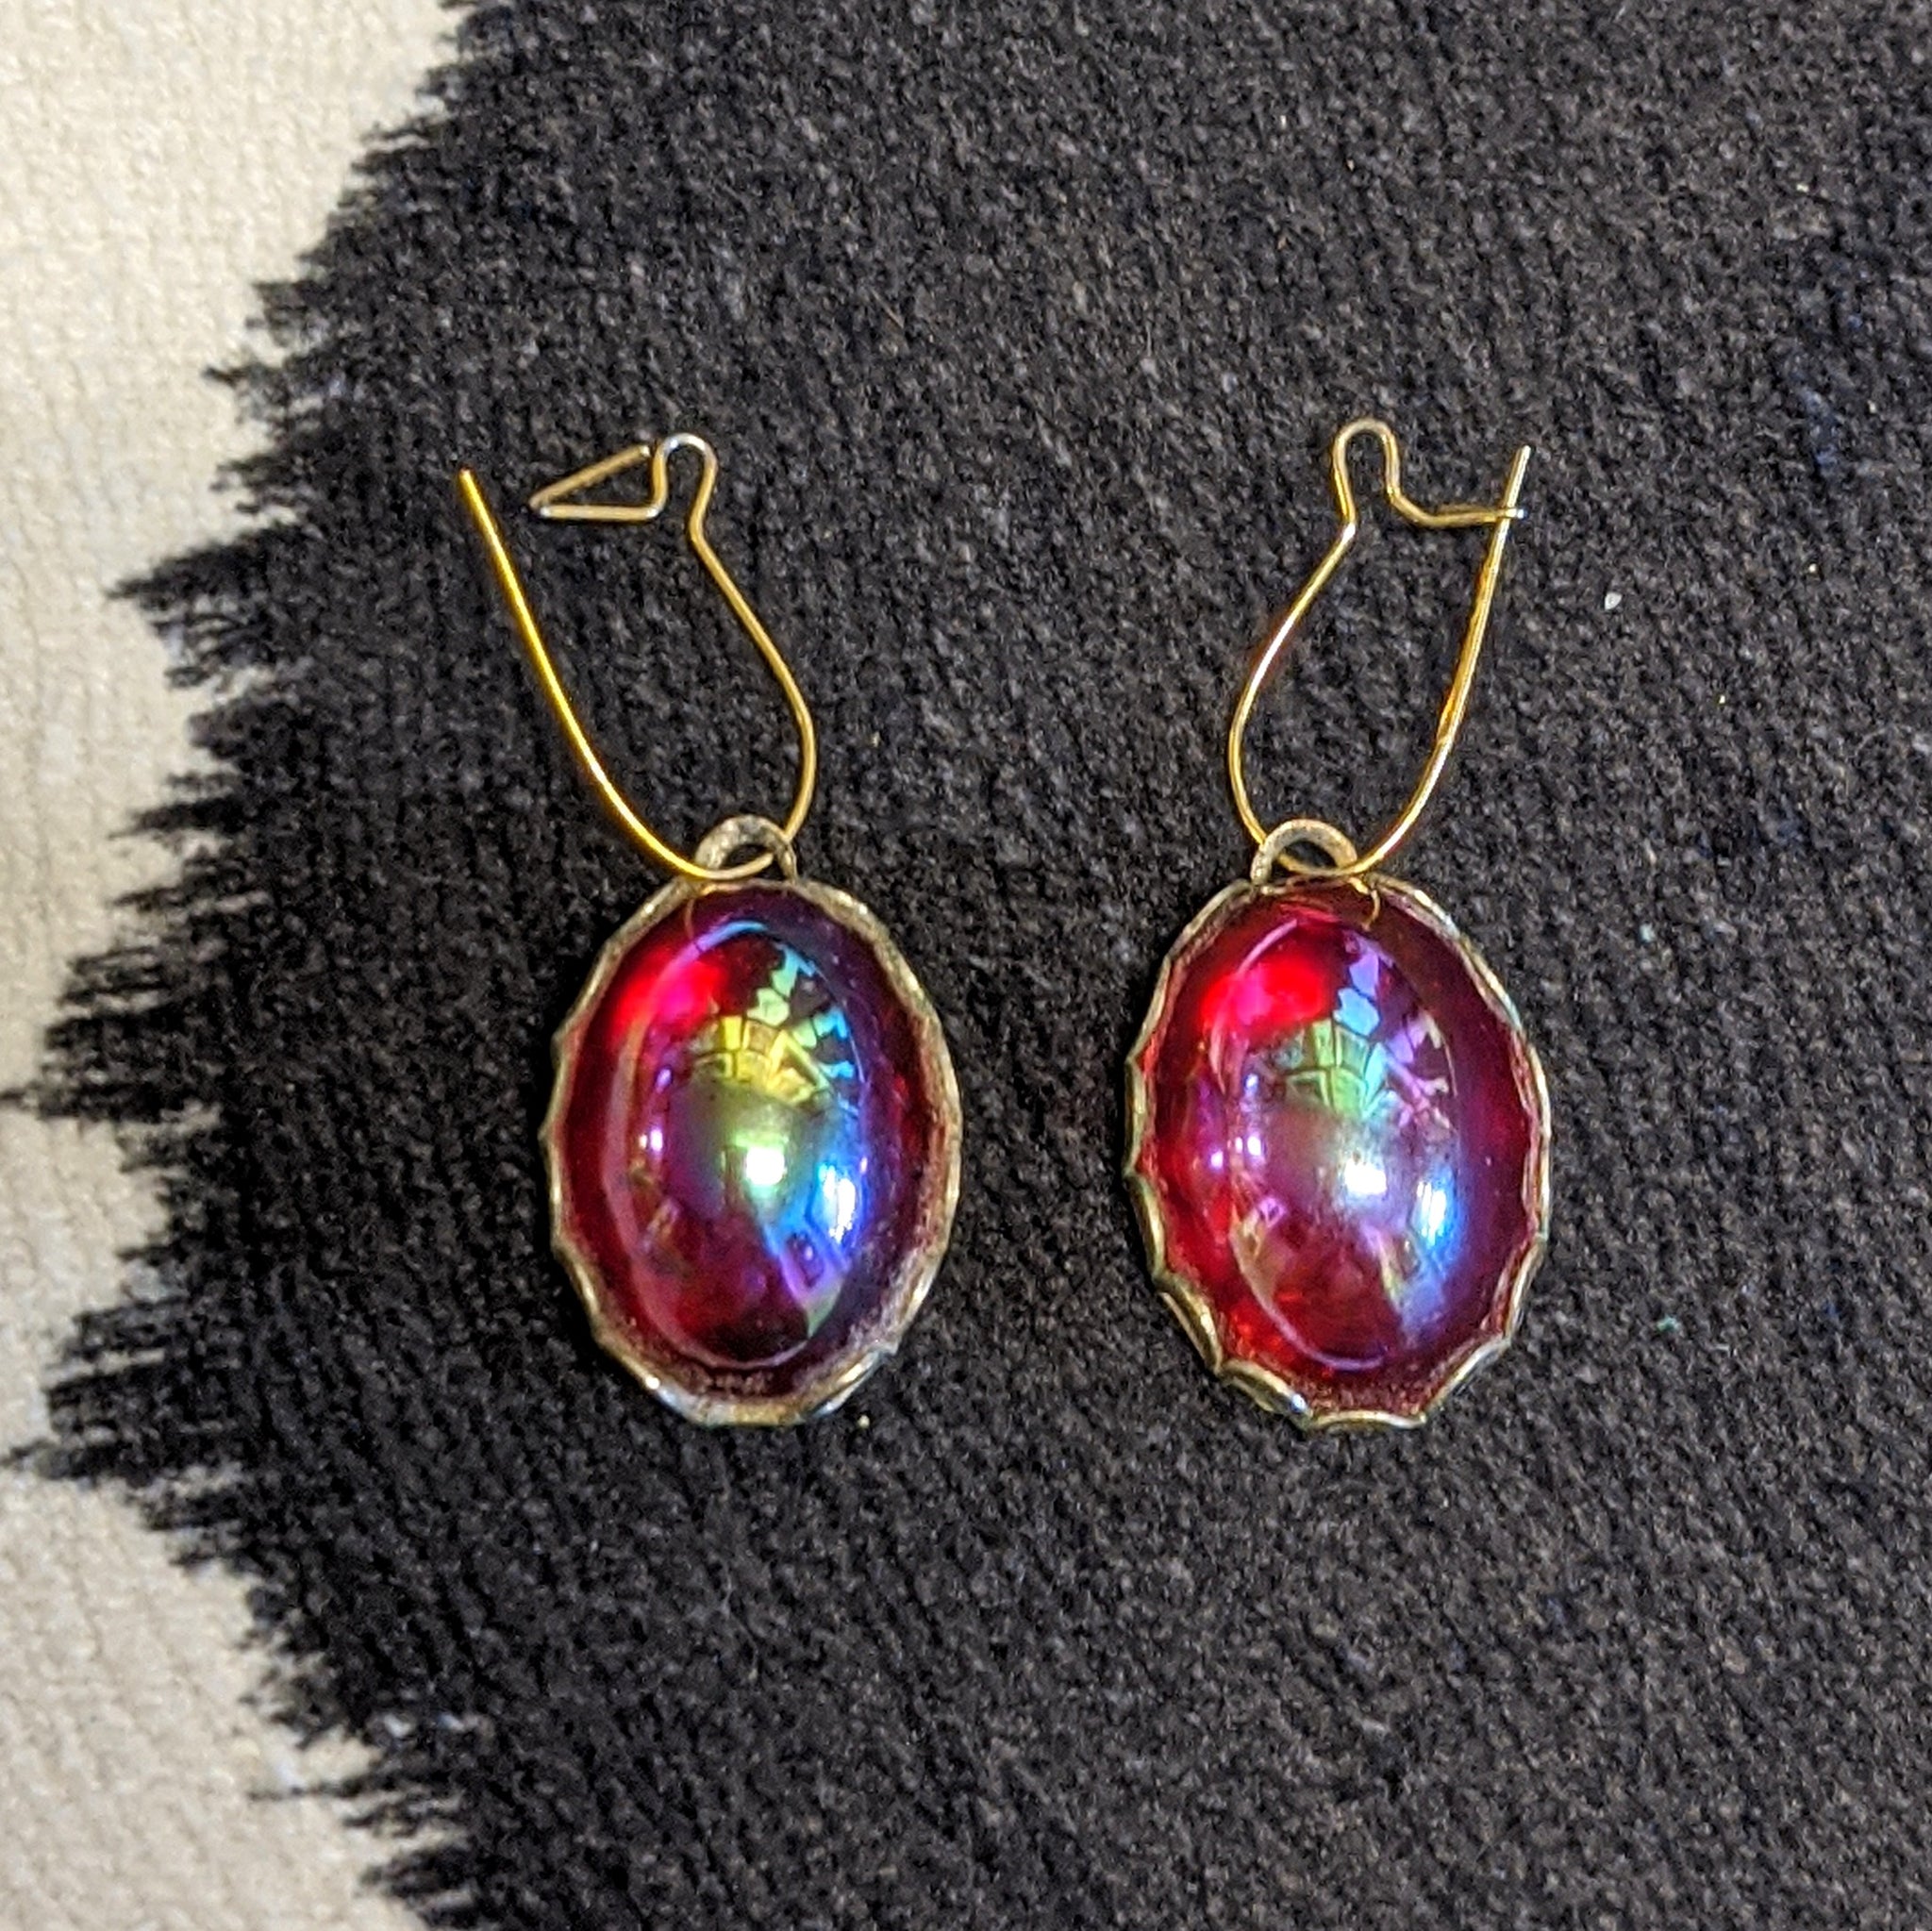 Red, oval drop earrings